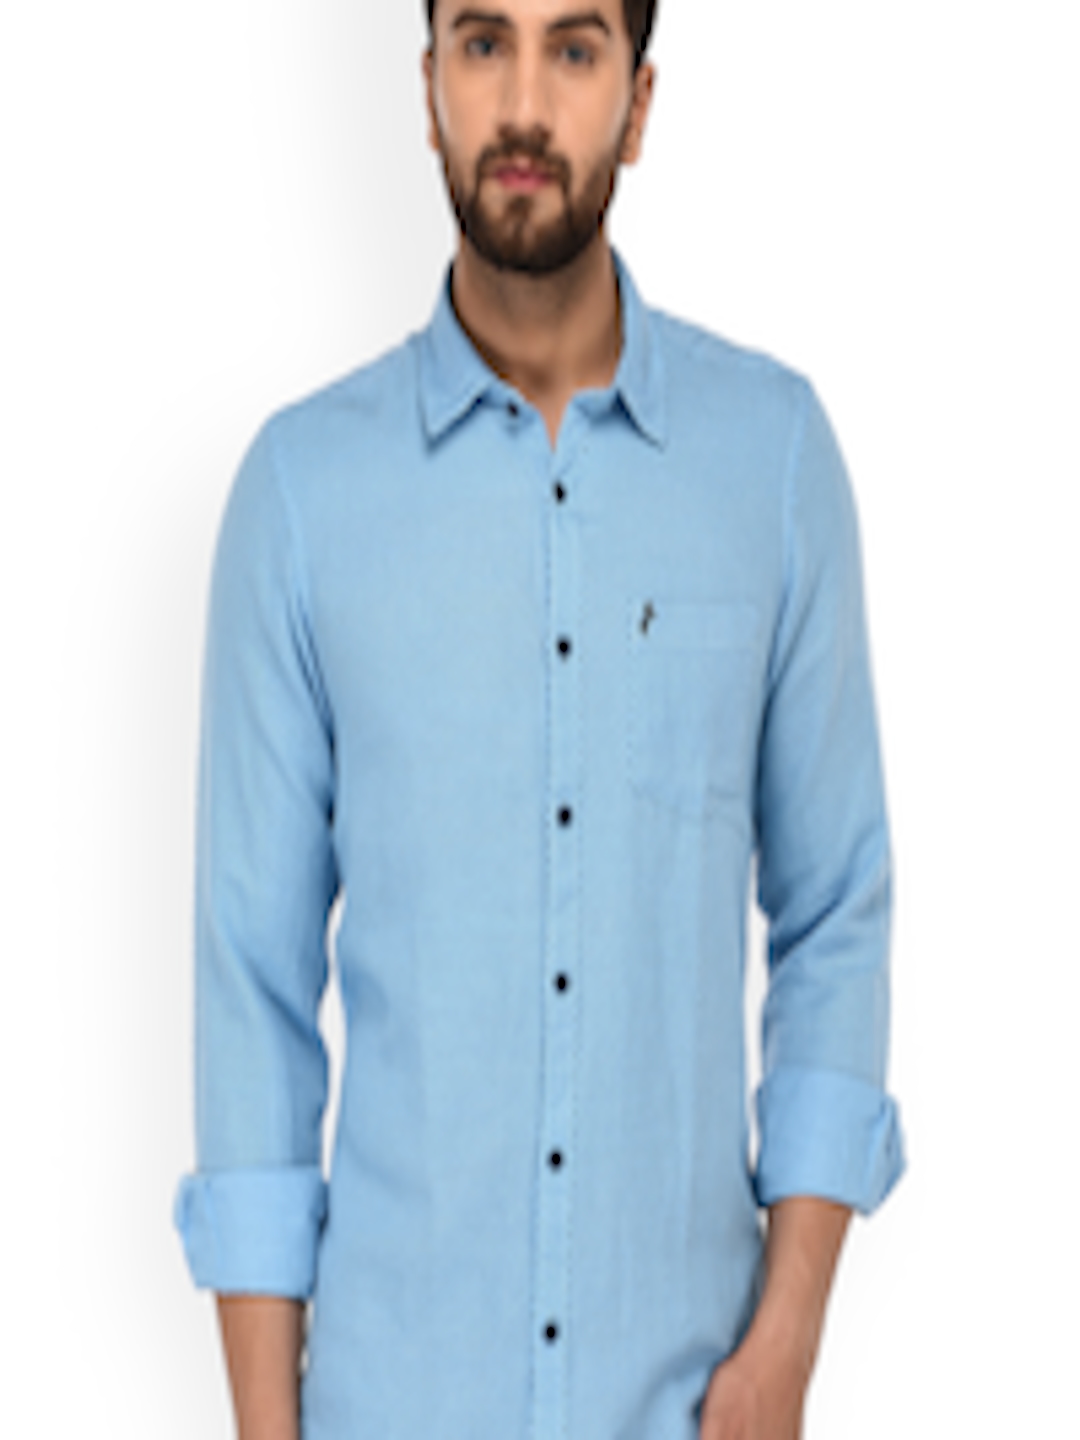 Buy SKY WATER Men Blue Slim Fit Printed Casual Shirt - Shirts for Men ...